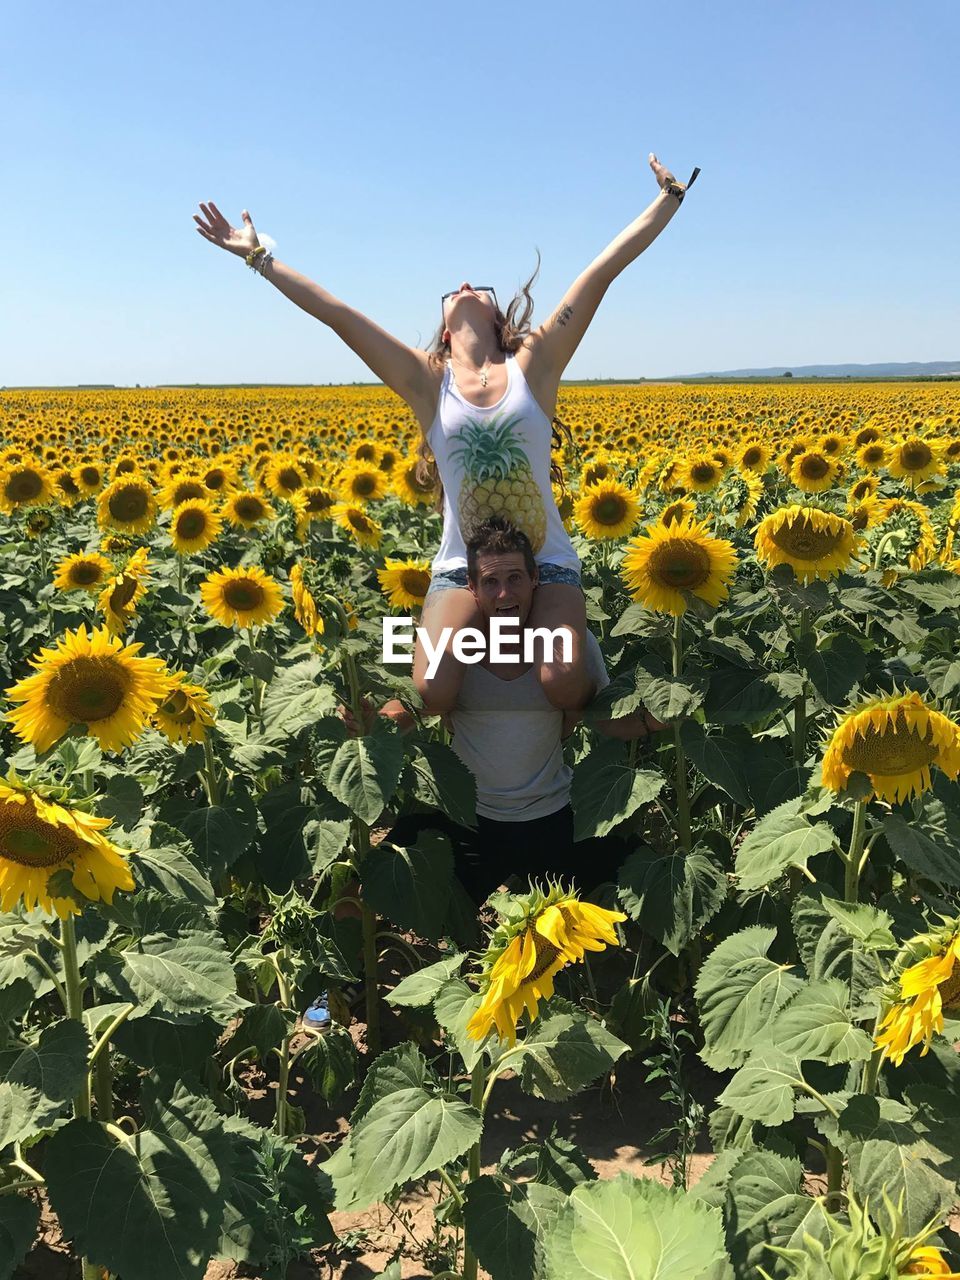 Portrait of boyfriend carrying girlfriend on shoulders at sunflower farm